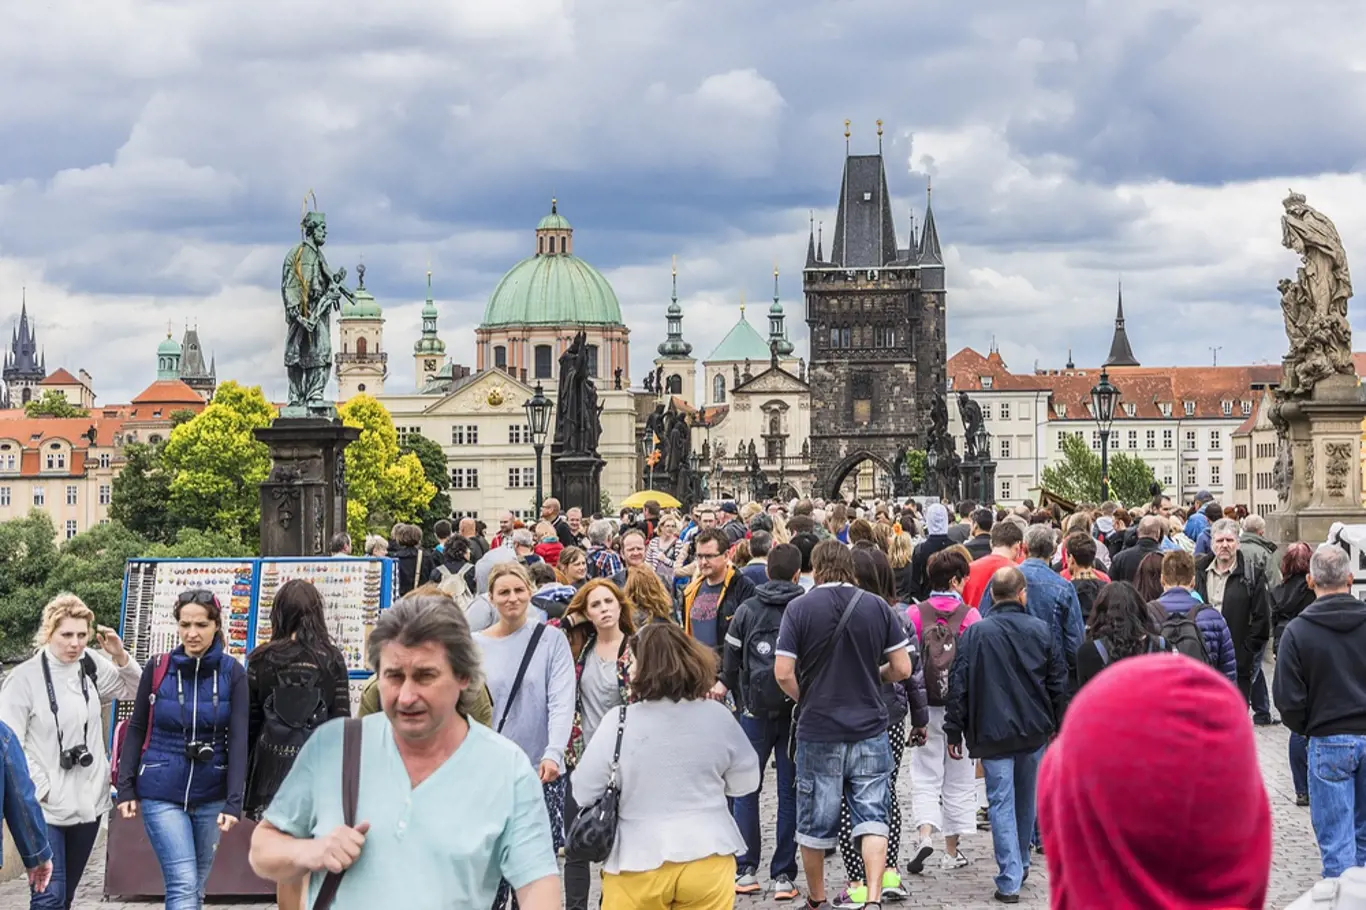 Bude celá Praha plná lidí tak, jako je dnes Karlův most? Podle unijních statistiků je reálný nárůst počtu Pražanů o pětinu do roku 2040. 